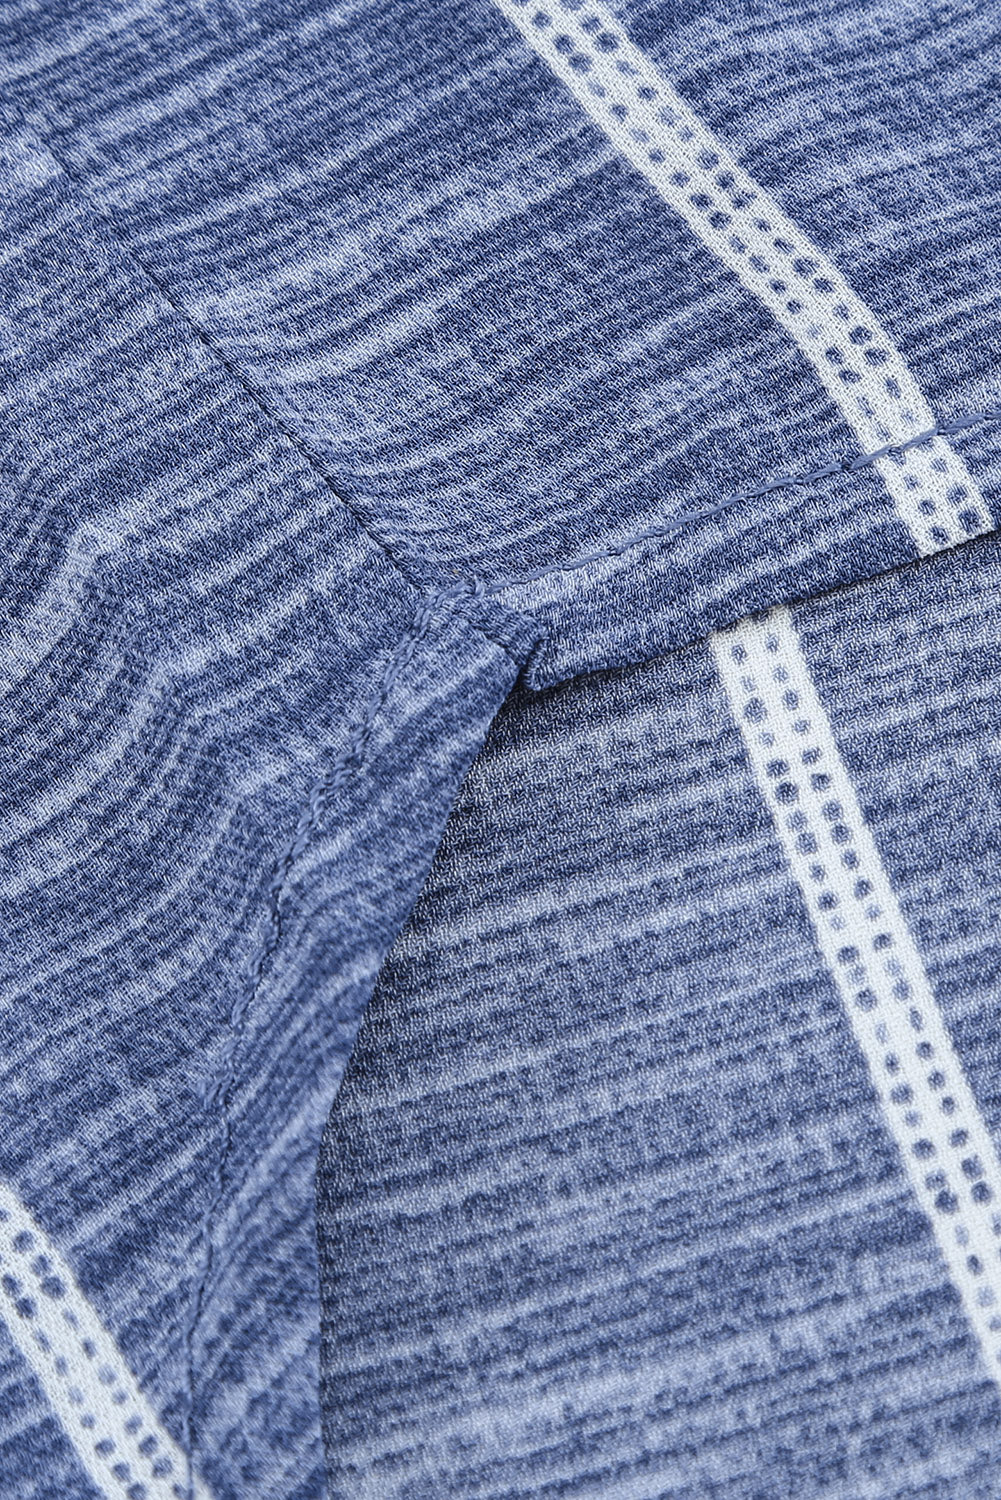 Multicolor Striped V Neck Pocket Long Sleeve Top